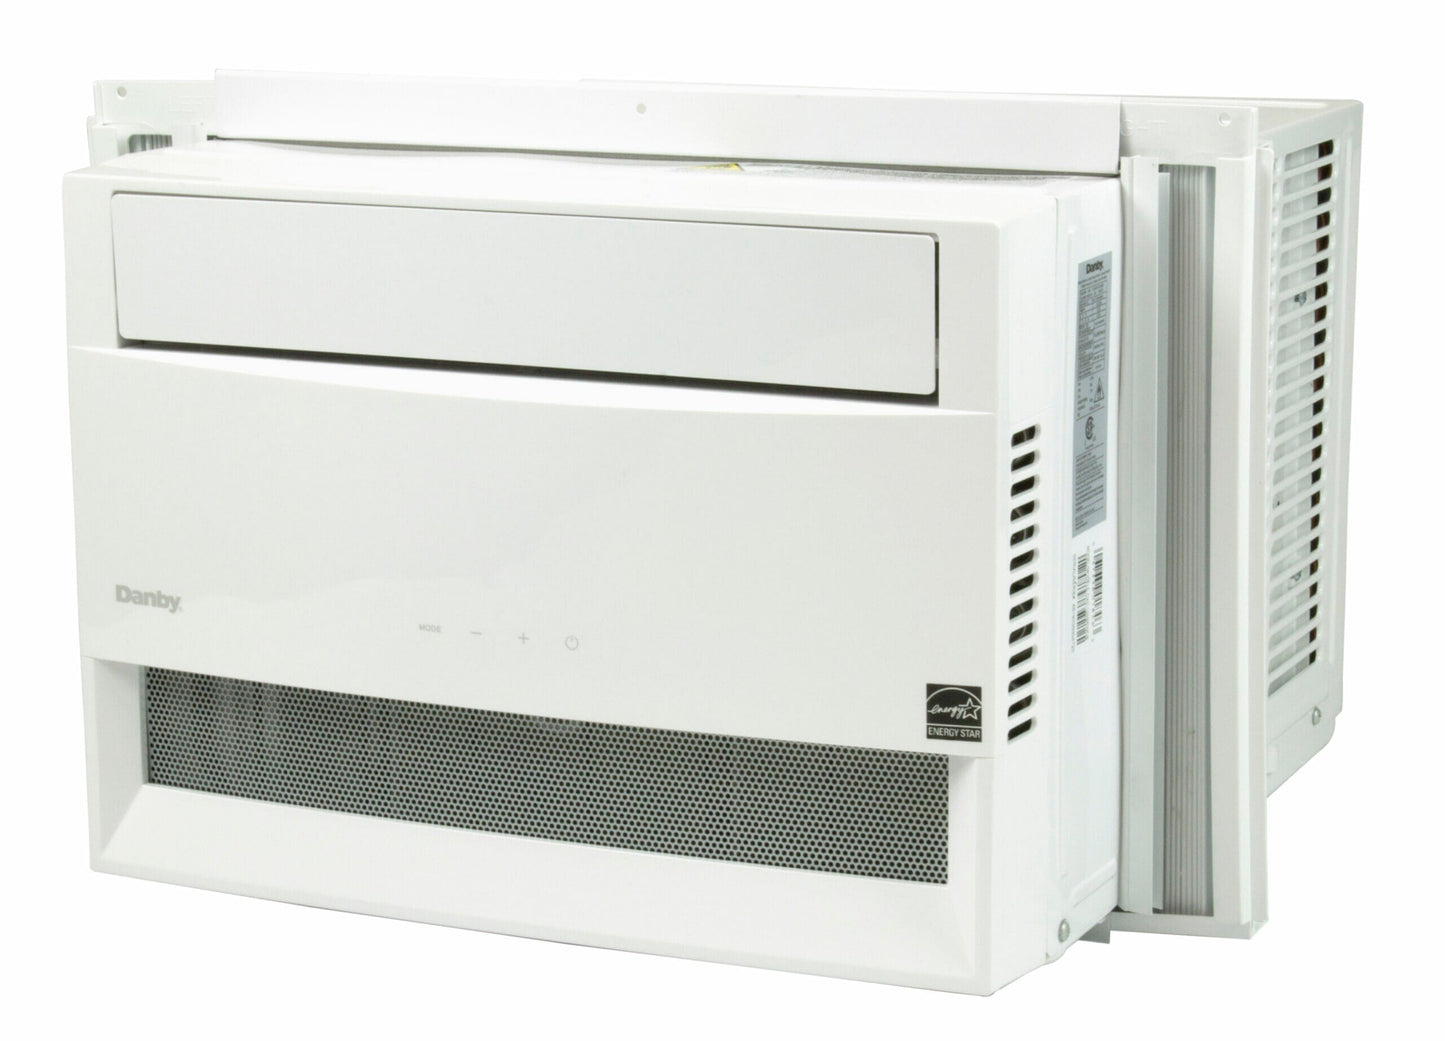 Danby 10000 BTU Window AC with Wireless Connect in White - DAC100B5WDB